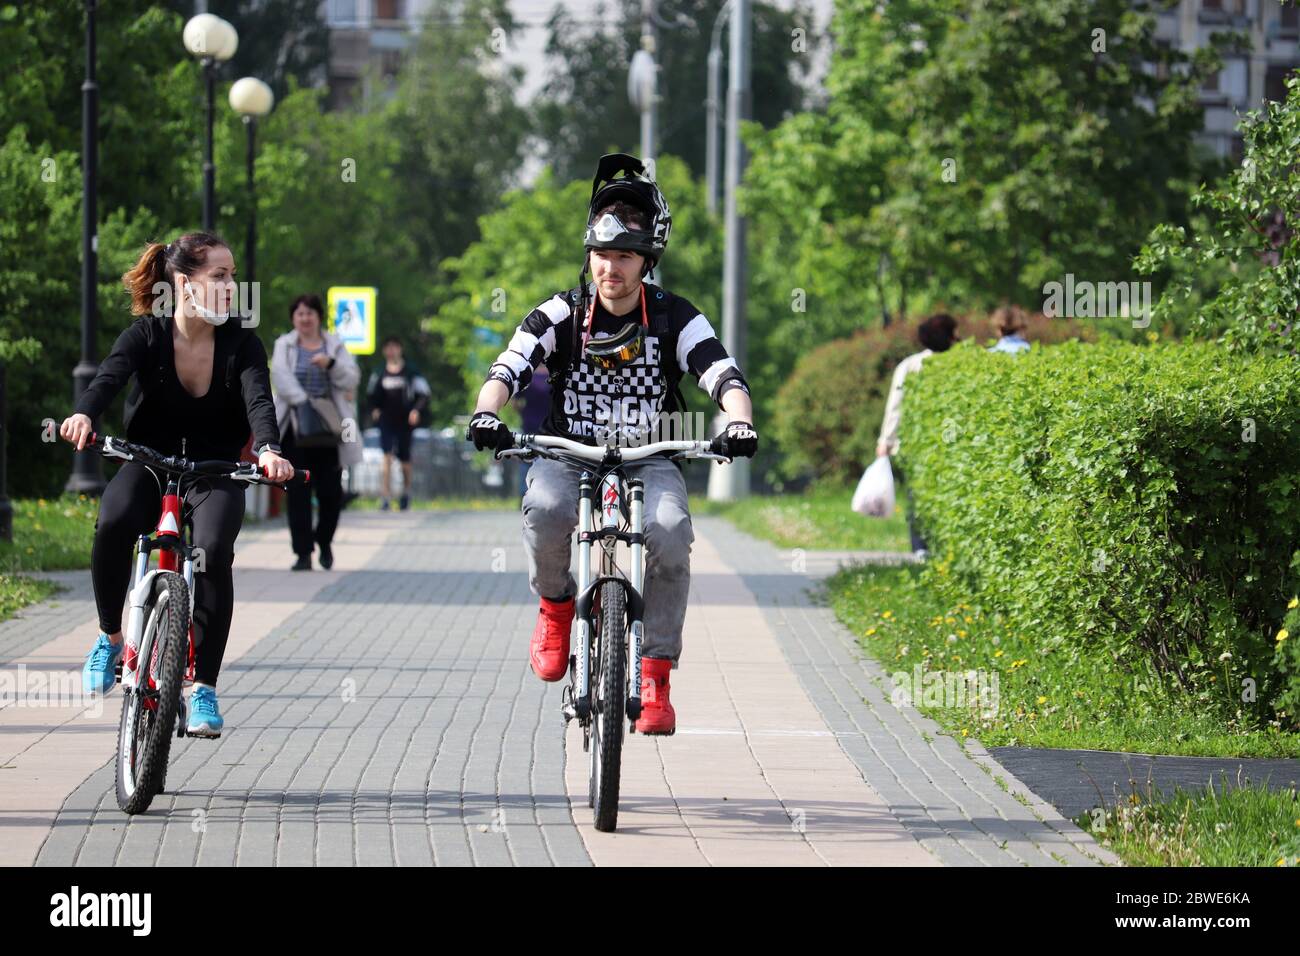 Un couple heureux fait du vélo dans un parc vert sur fond de personnes à pied. Concept de cyclisme, loisirs en famille, Journée mondiale du vélo Banque D'Images